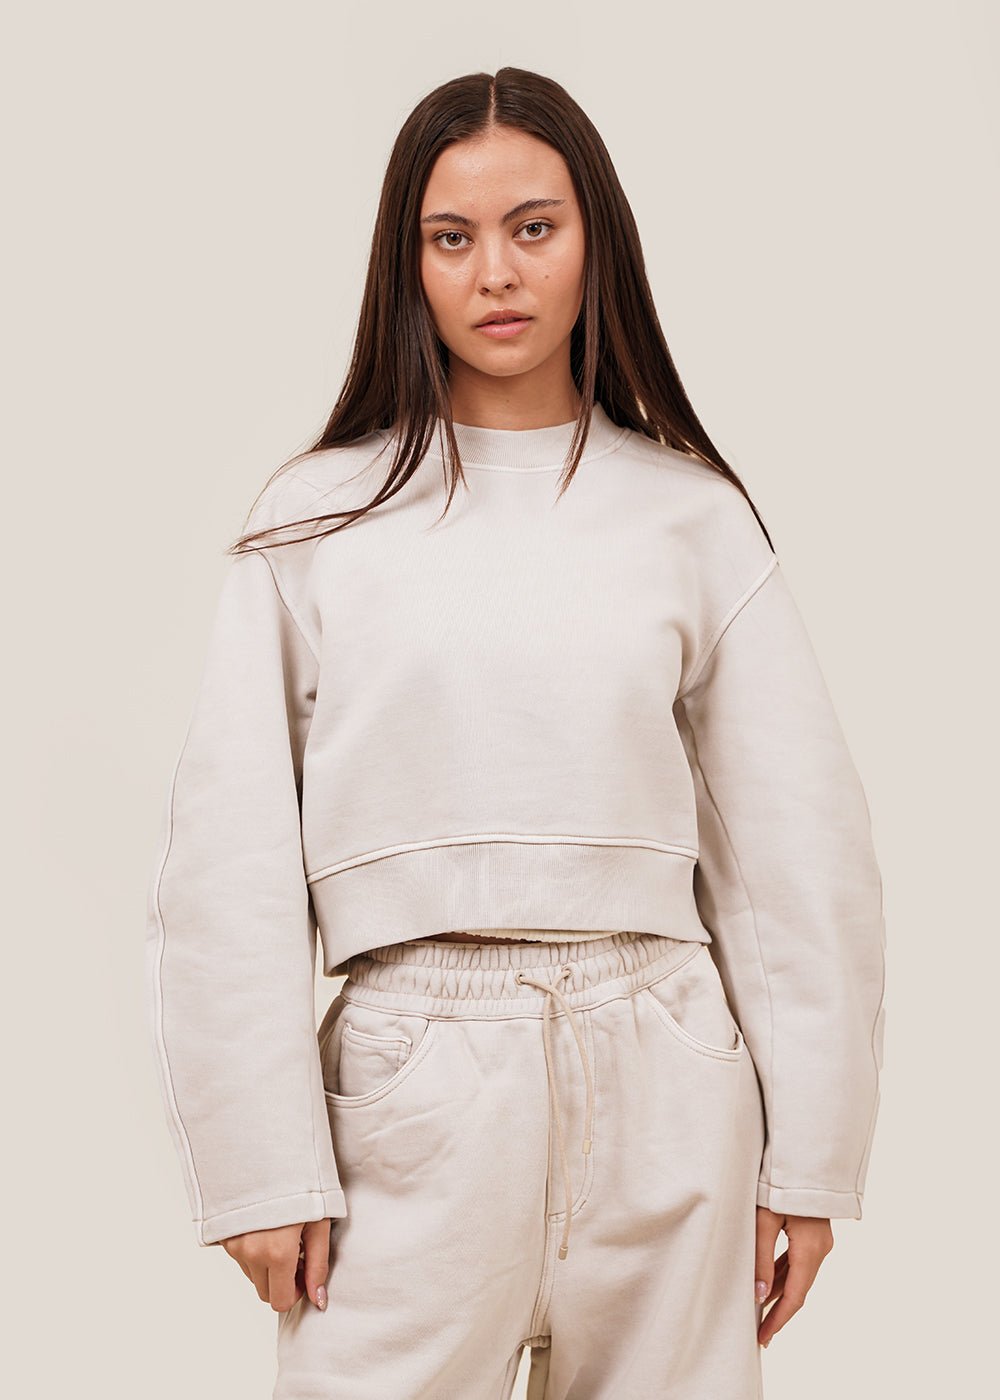 AMOMENTO Beige Round Sleeve Cropped Sweatshirt - New Classics Studios Sustainable Ethical Fashion Canada